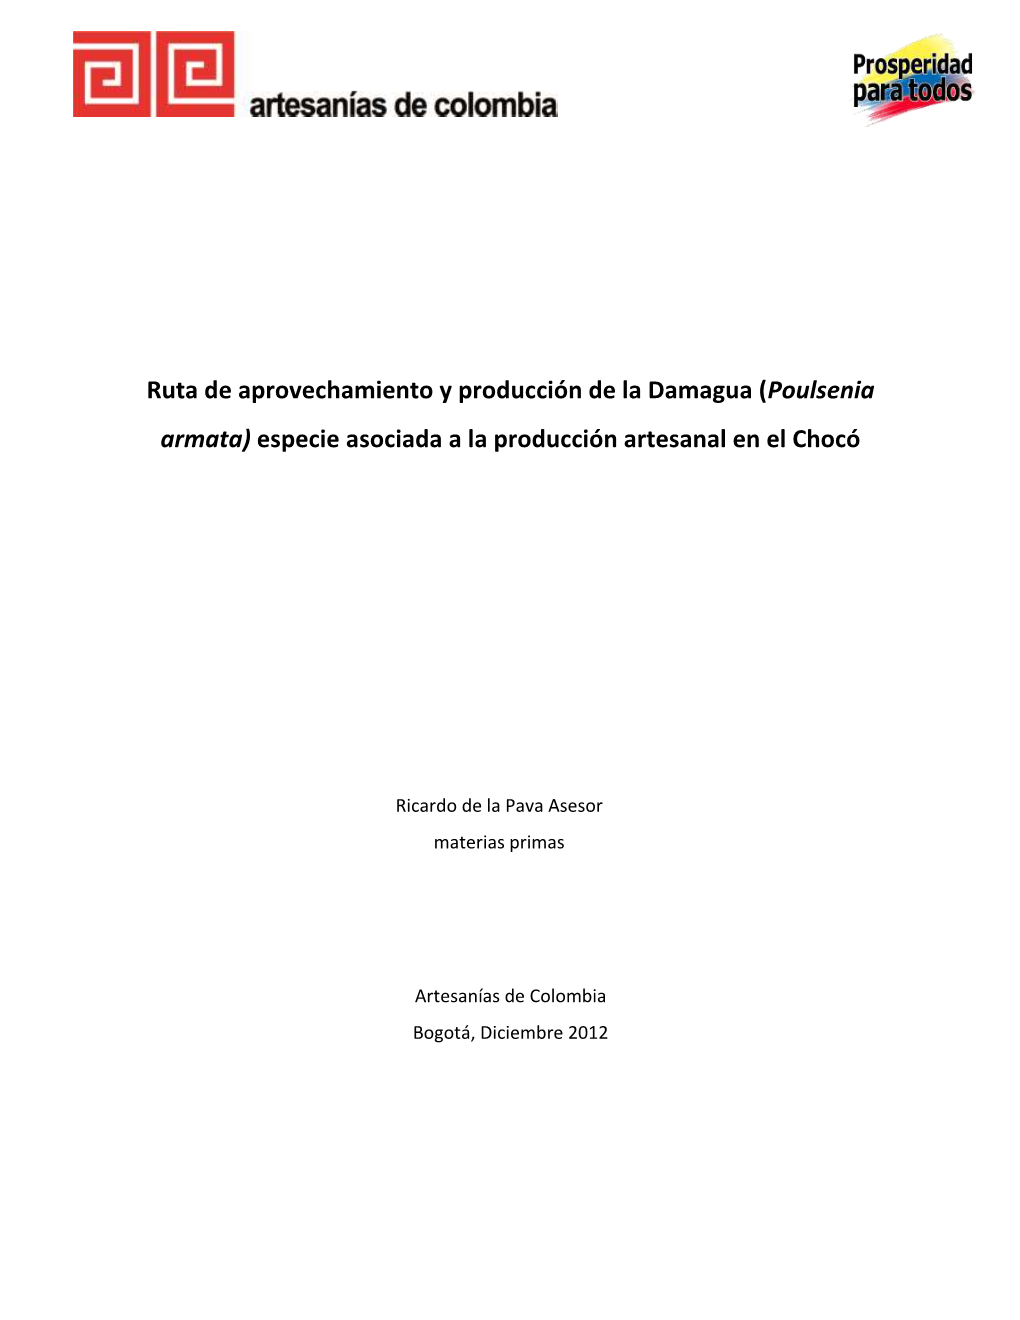 Poulsenia Armata) Especie Asociada a La Producción Artesanal En El Chocó